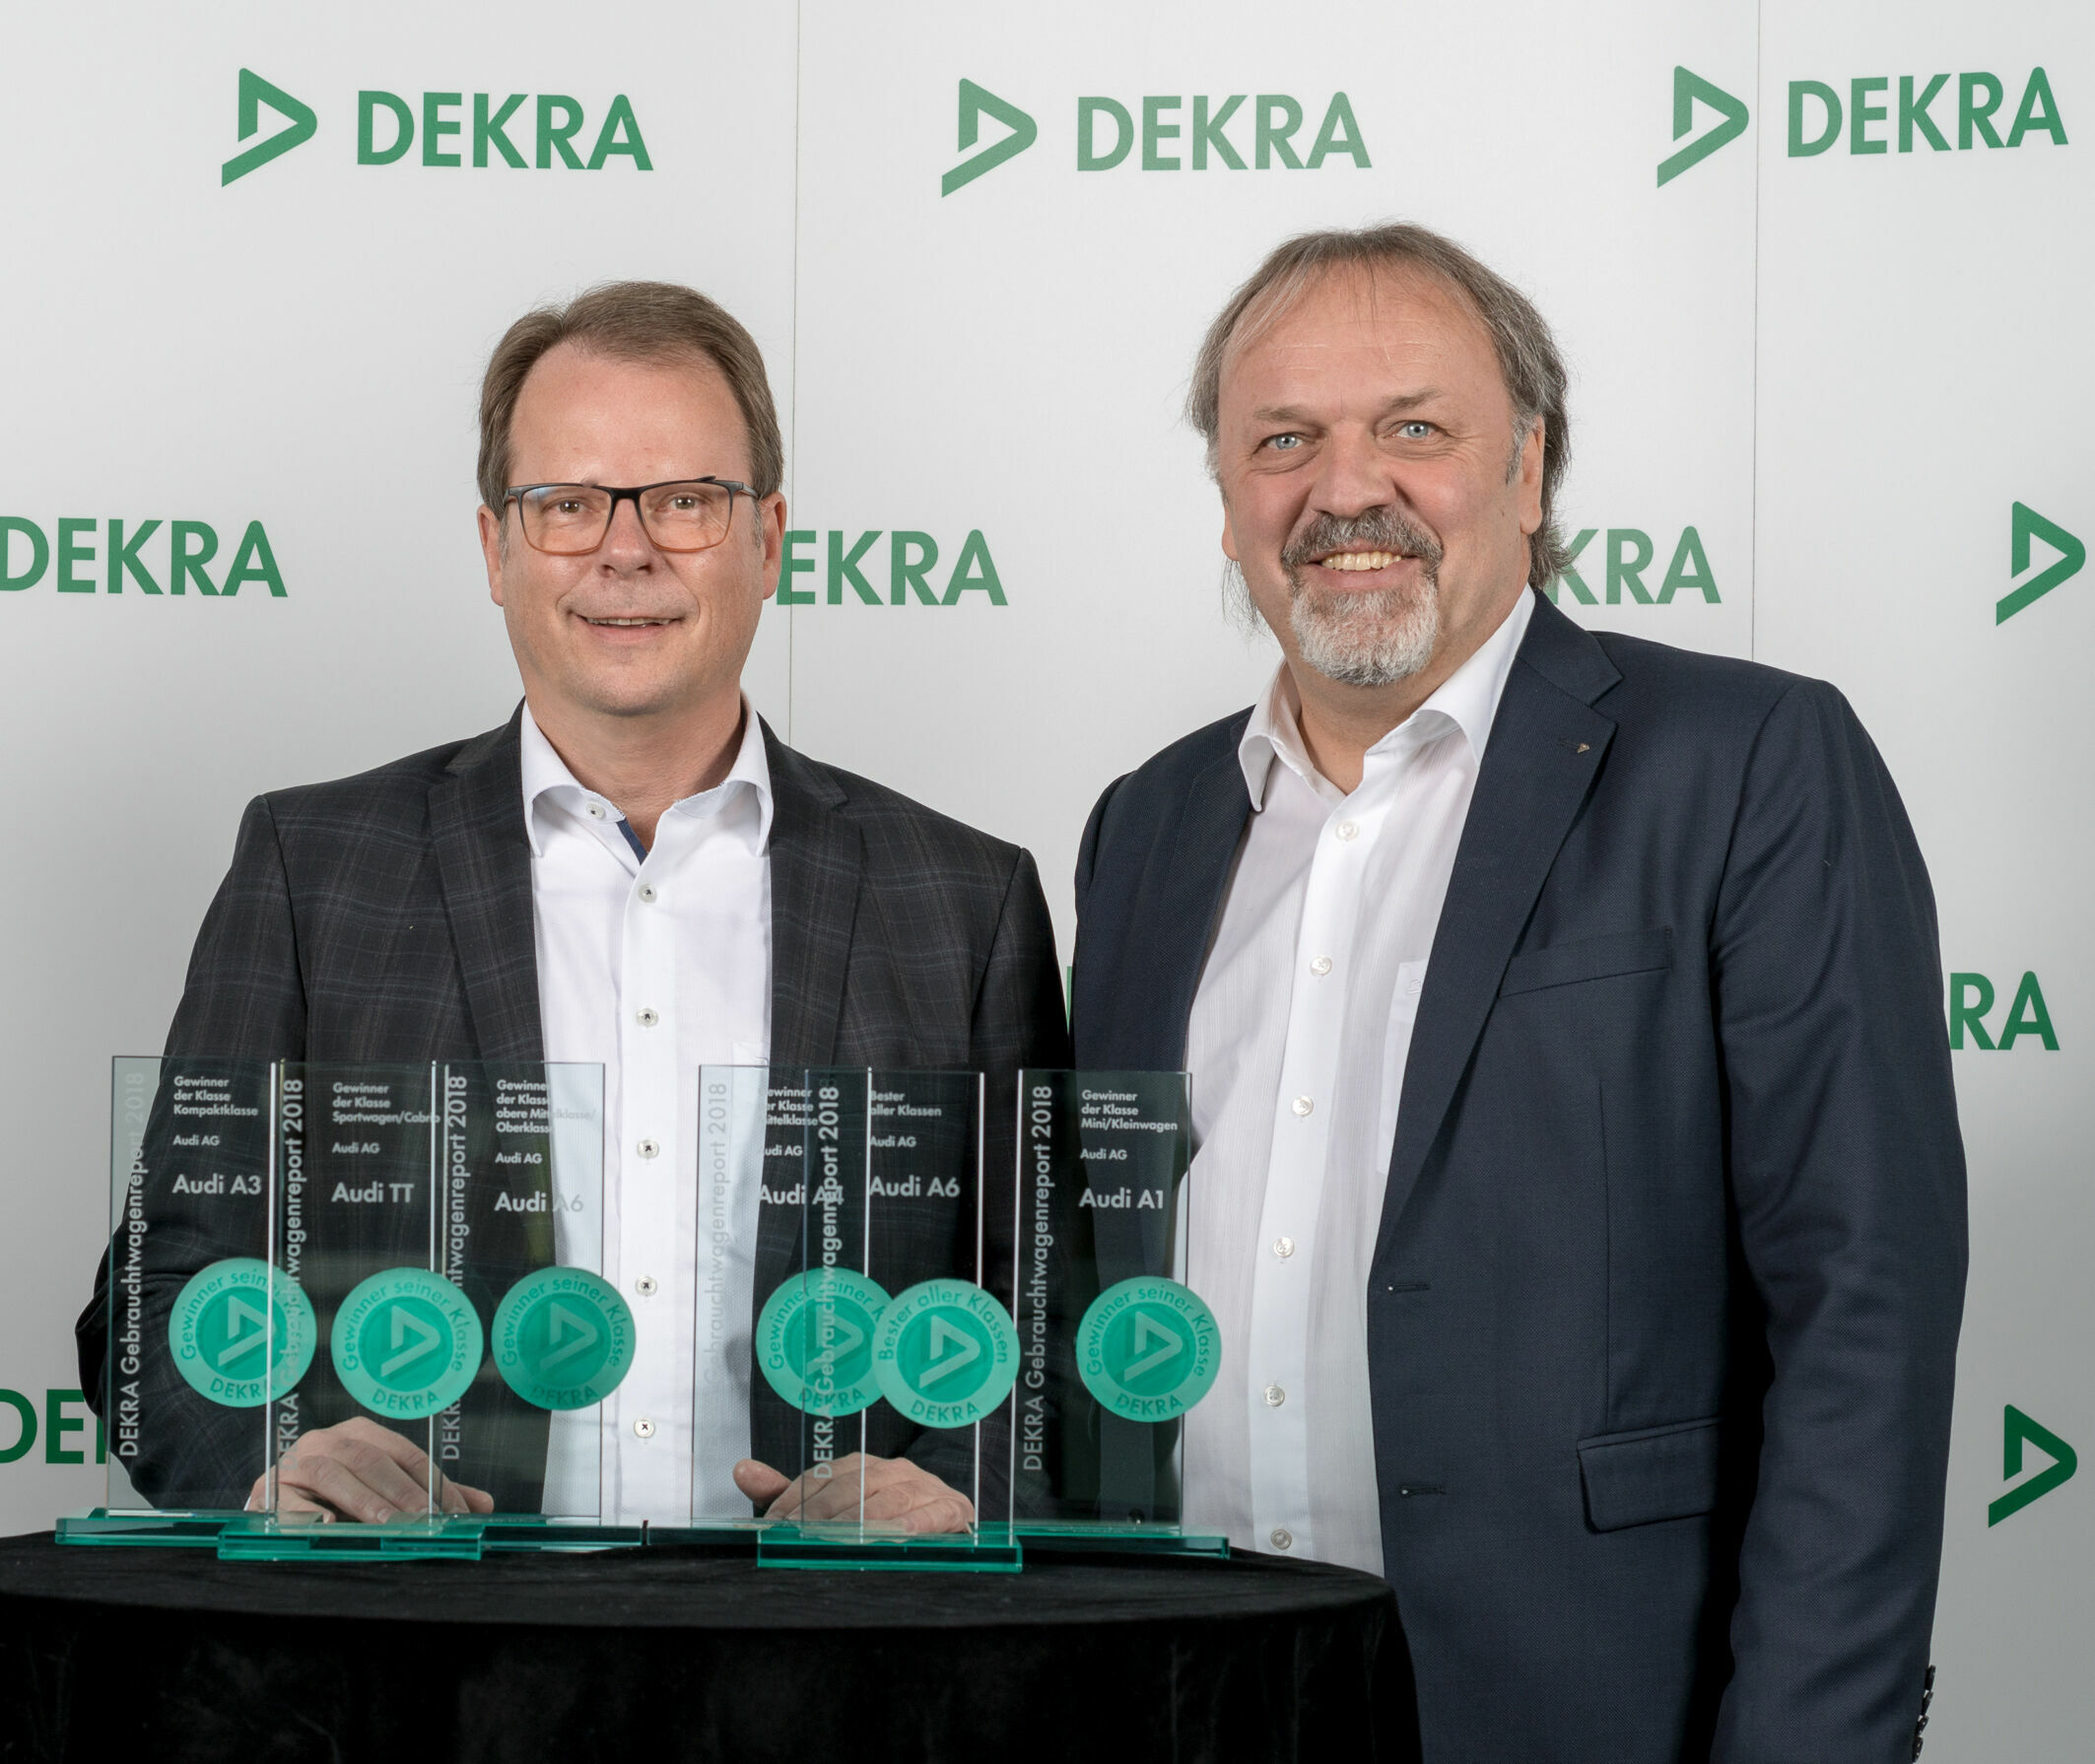 Audi beste Marke beim DEKRA Gebrauchtwagenreport 2018